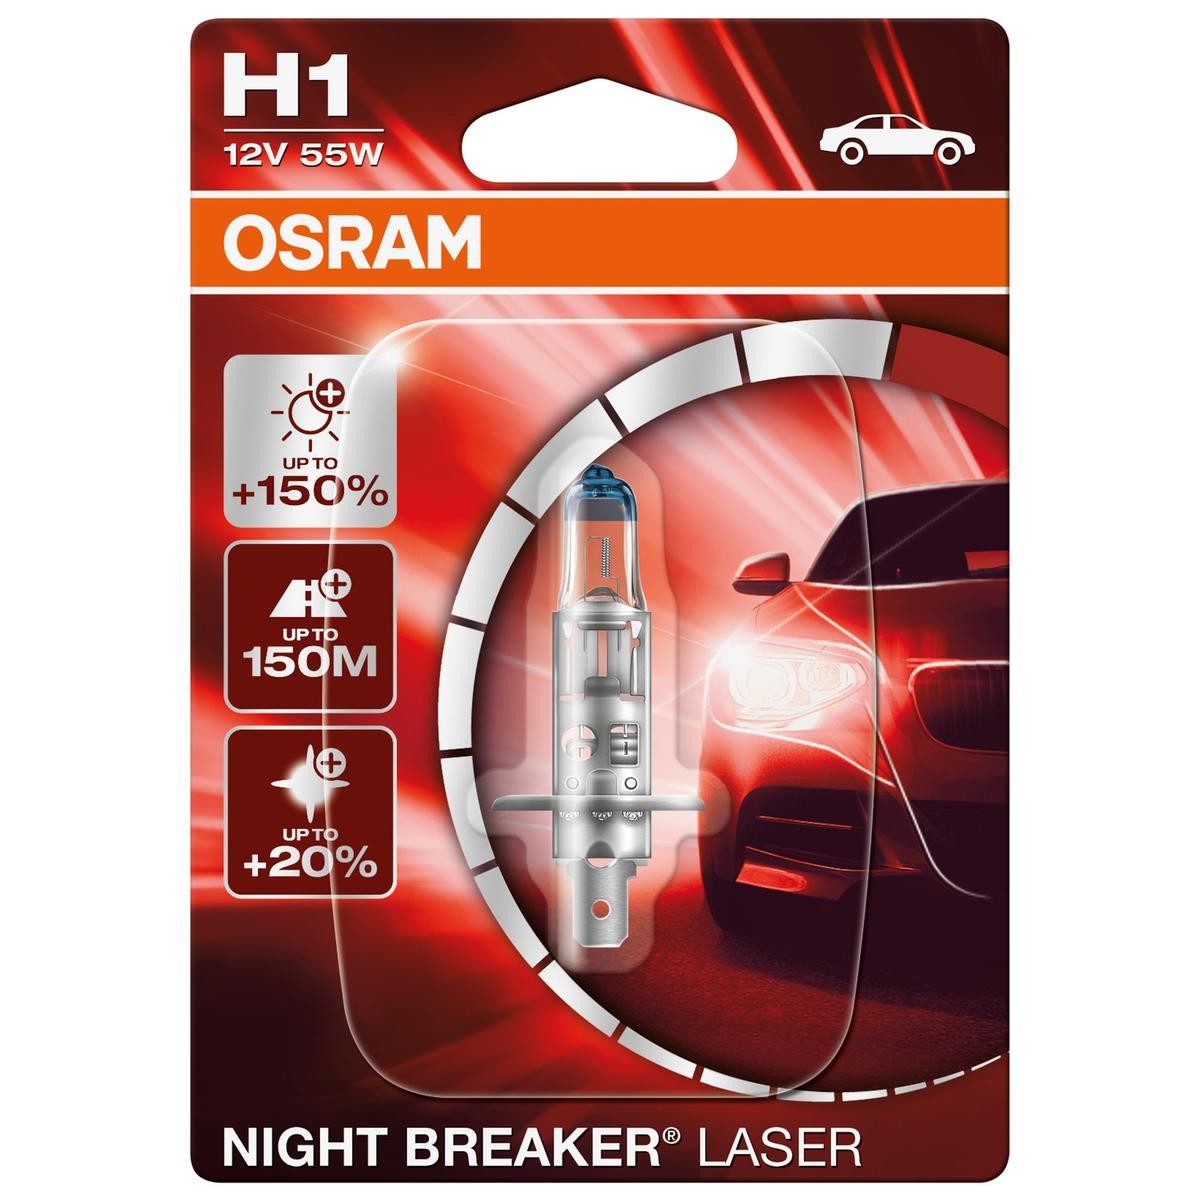 64150NL-01B OSRAM NIGHT BREAKER LASER next Generation H1 12V 55W P14.5s,  4050K, Halogen Bulb, spotlight